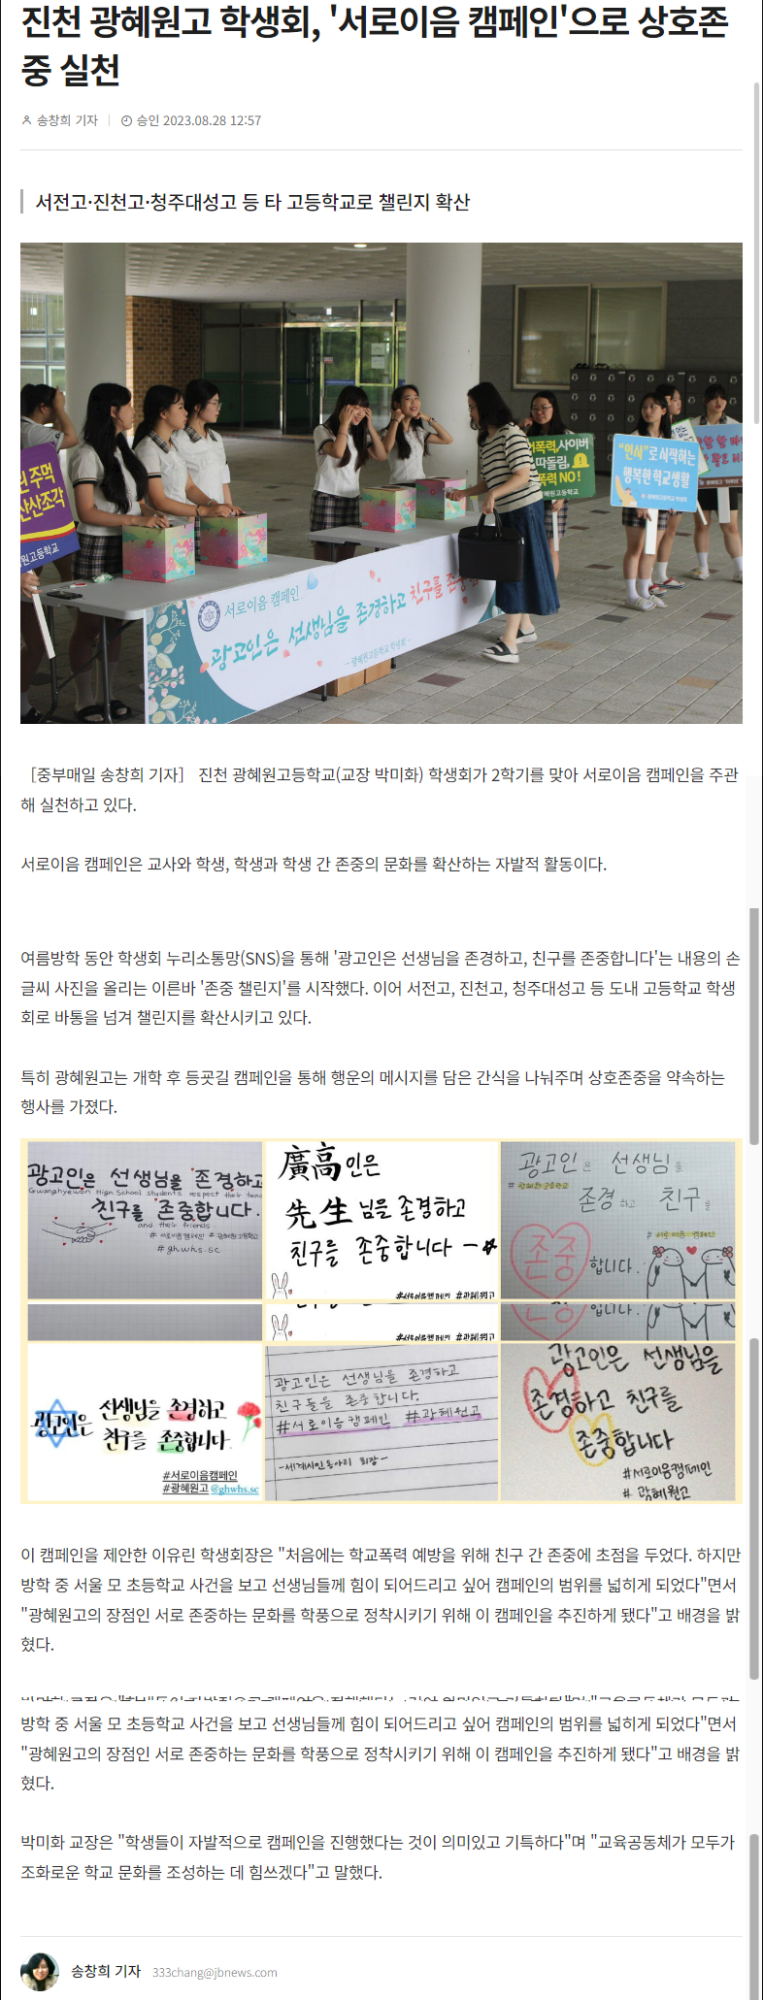 서로이음 캠페인(중부매일)